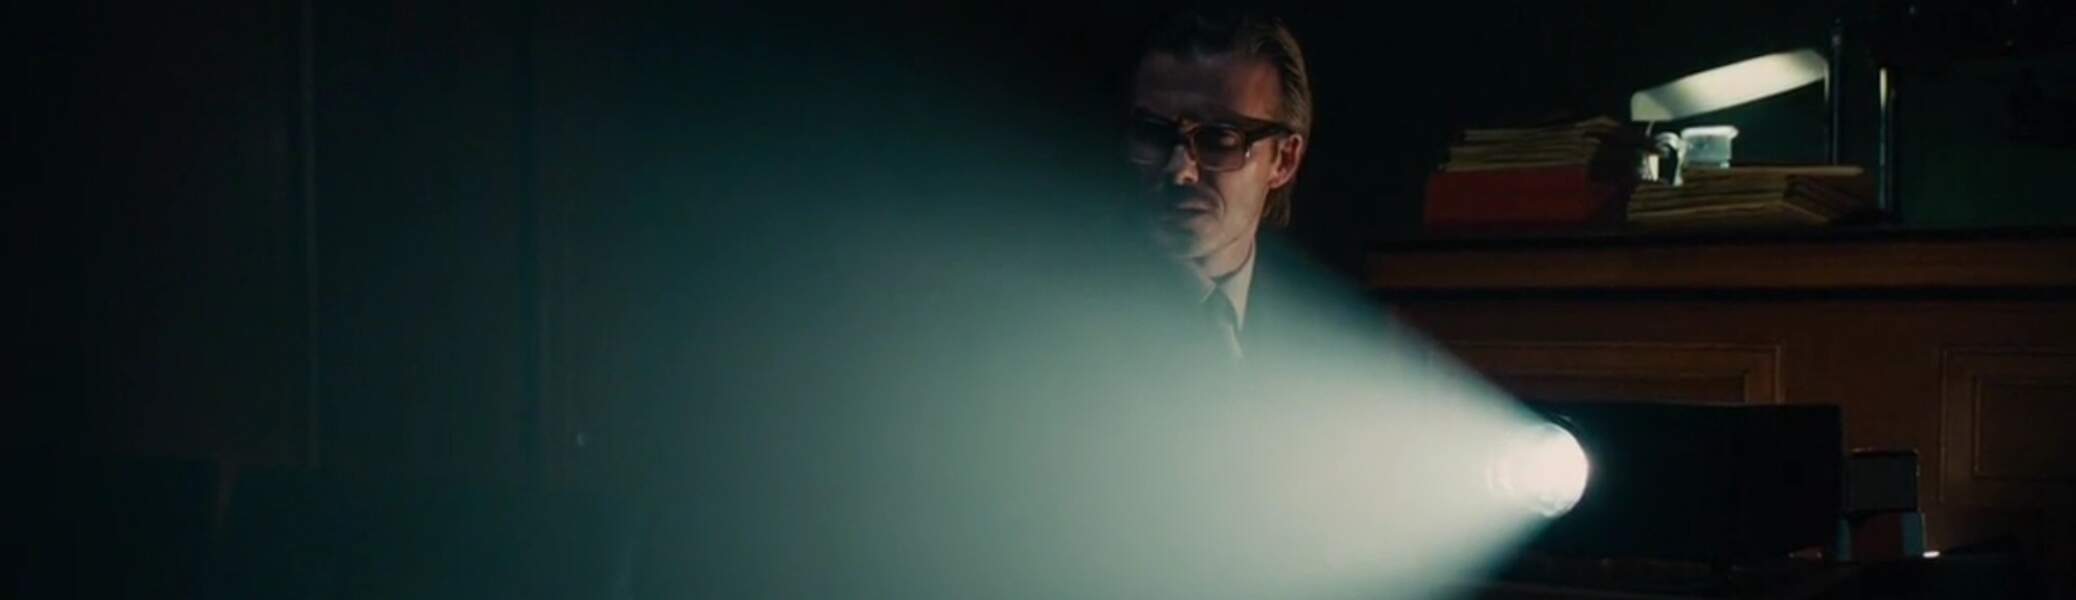 Discrète apparition pour David Beckham, projectionniste dans Agents très spéciaux-code UNCLE (2015)